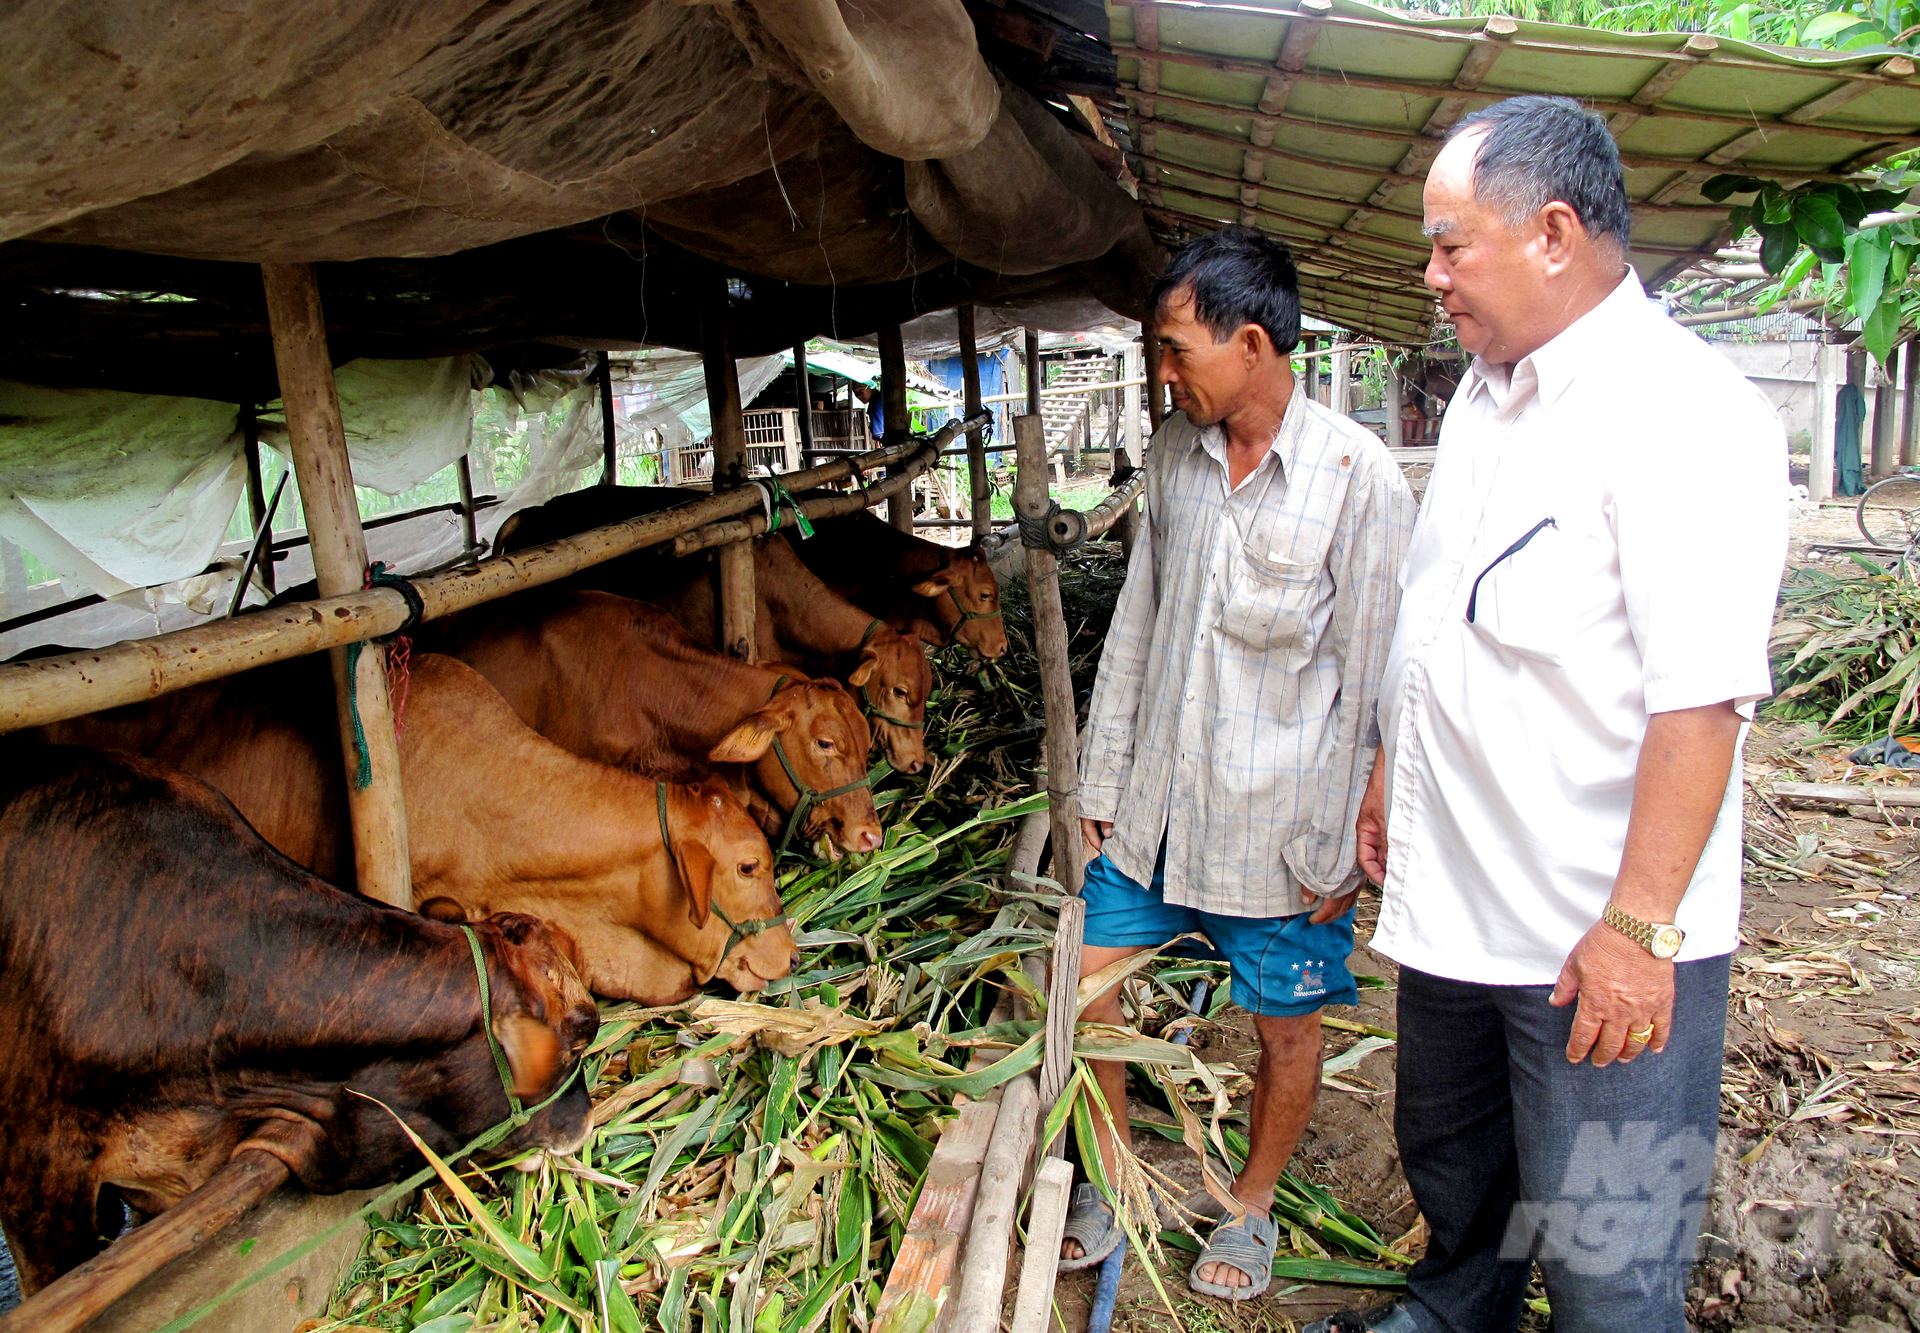 Phong trào nuôi bò thịt ở tỉnh Long An phát triển mạnh những năm gần đây. Ảnh: Lê Hoàng Vũ.